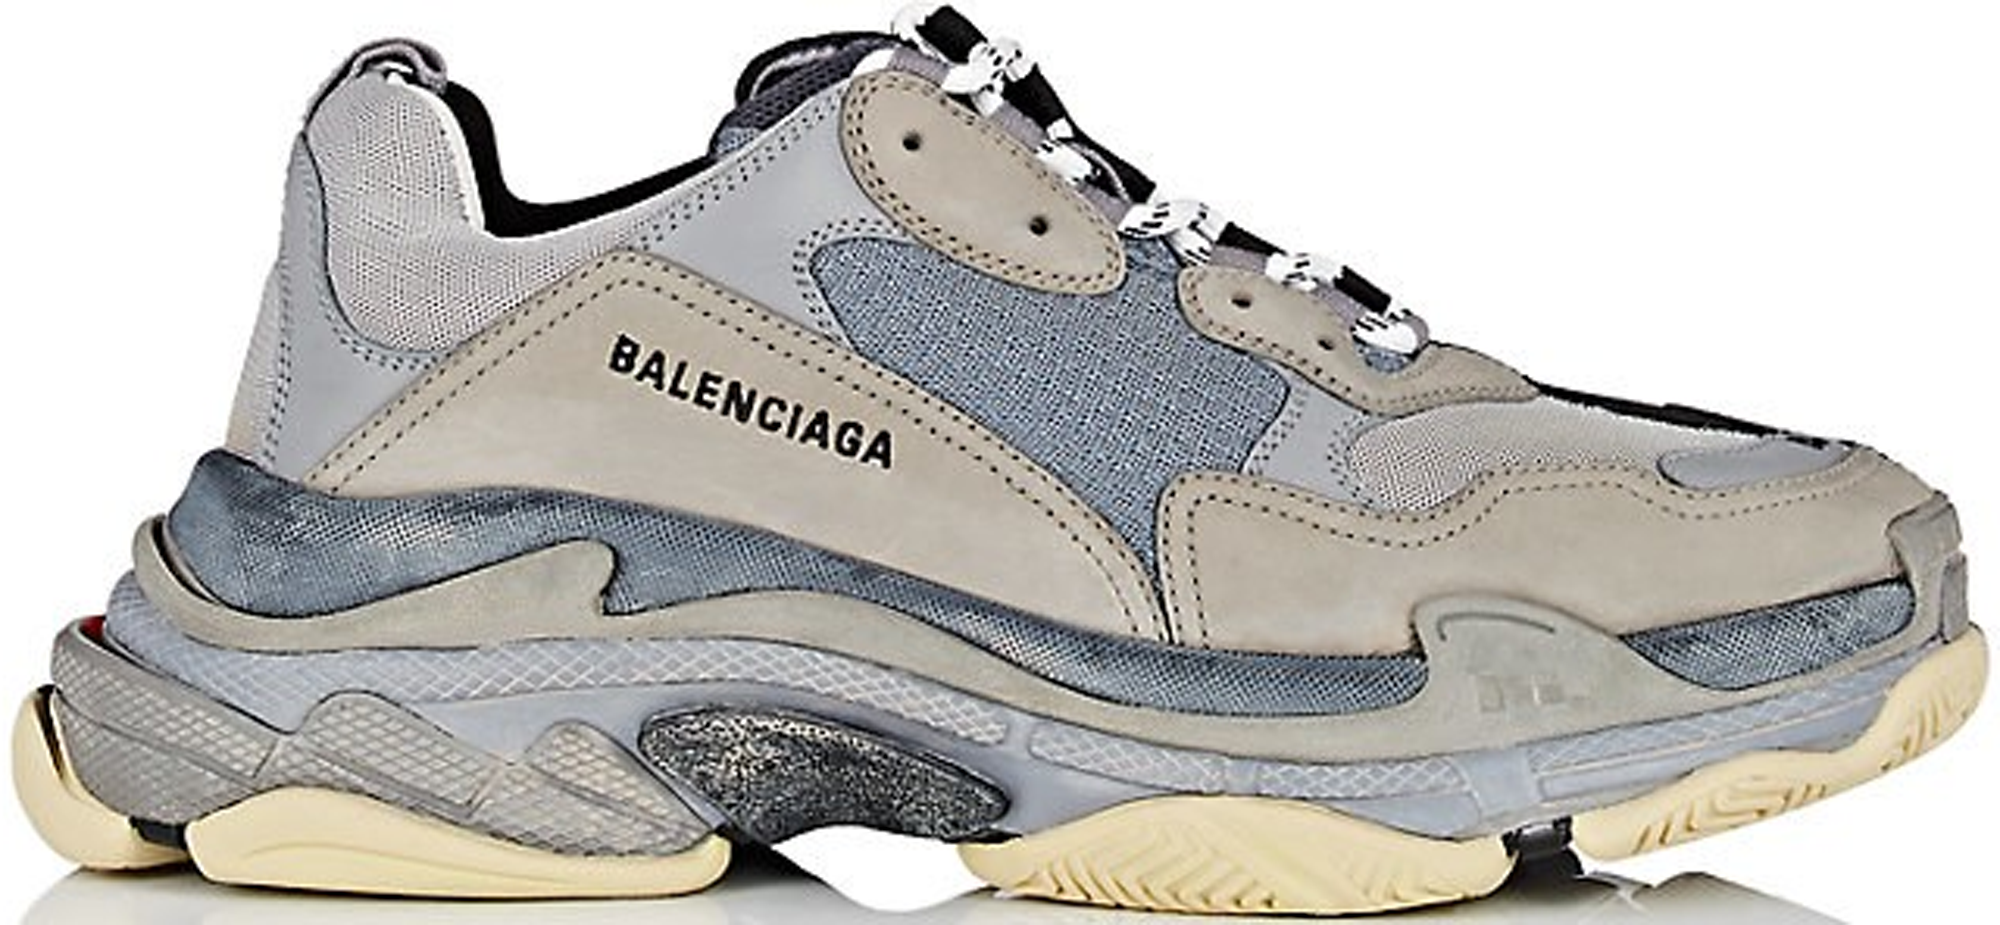 Balenciaga Shoes Store Online SAVE 38  pivphuketcom